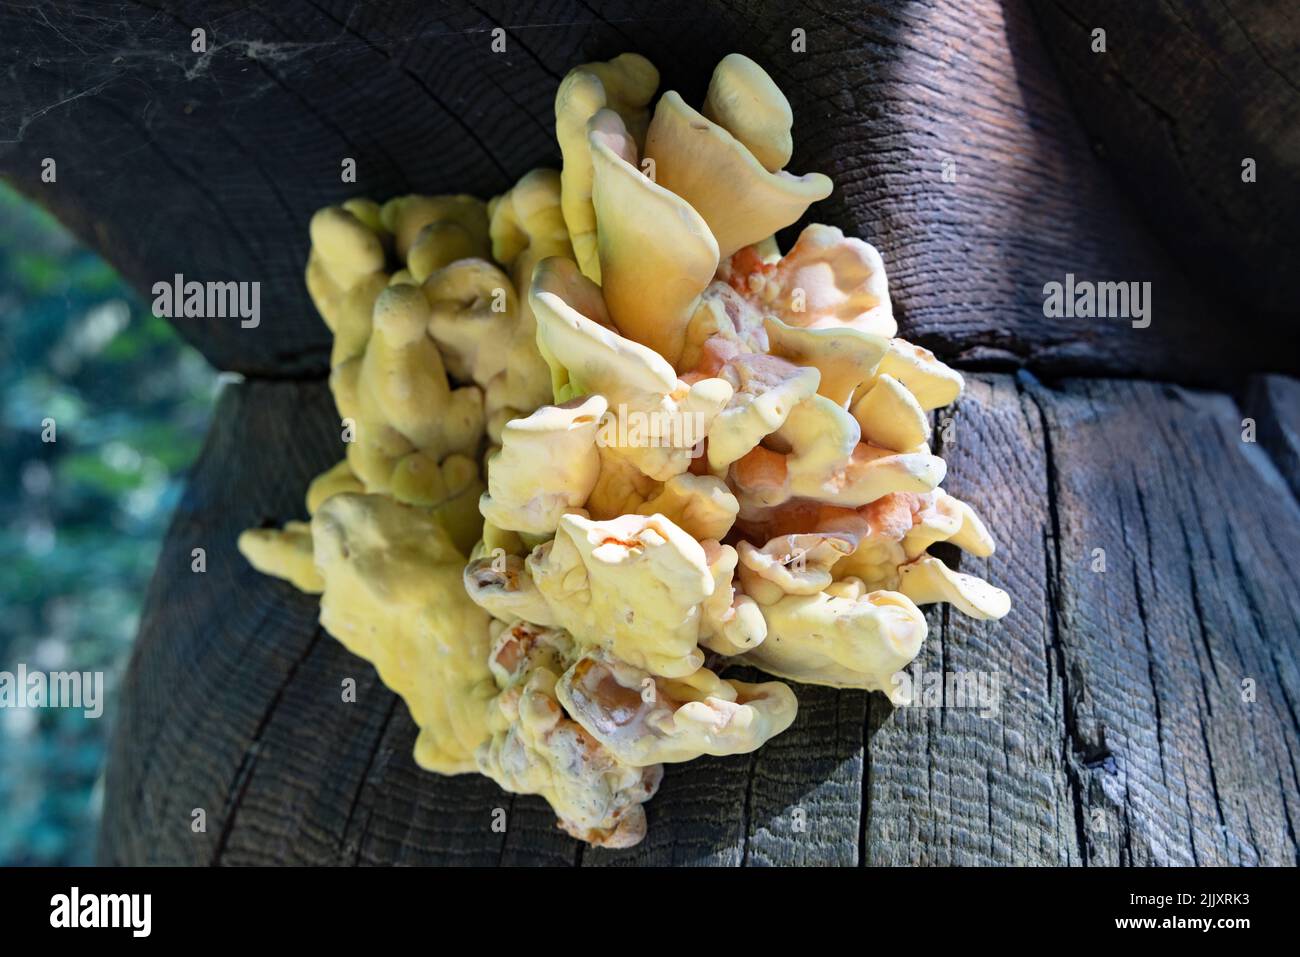 Laetiporus Pilz close up, allgemein bekannt als Schwefel Regal, Huhn des Waldes, Hühnerpilz und Hühnerpilz aufgrund seines Geschmacks. Europa Stockfoto